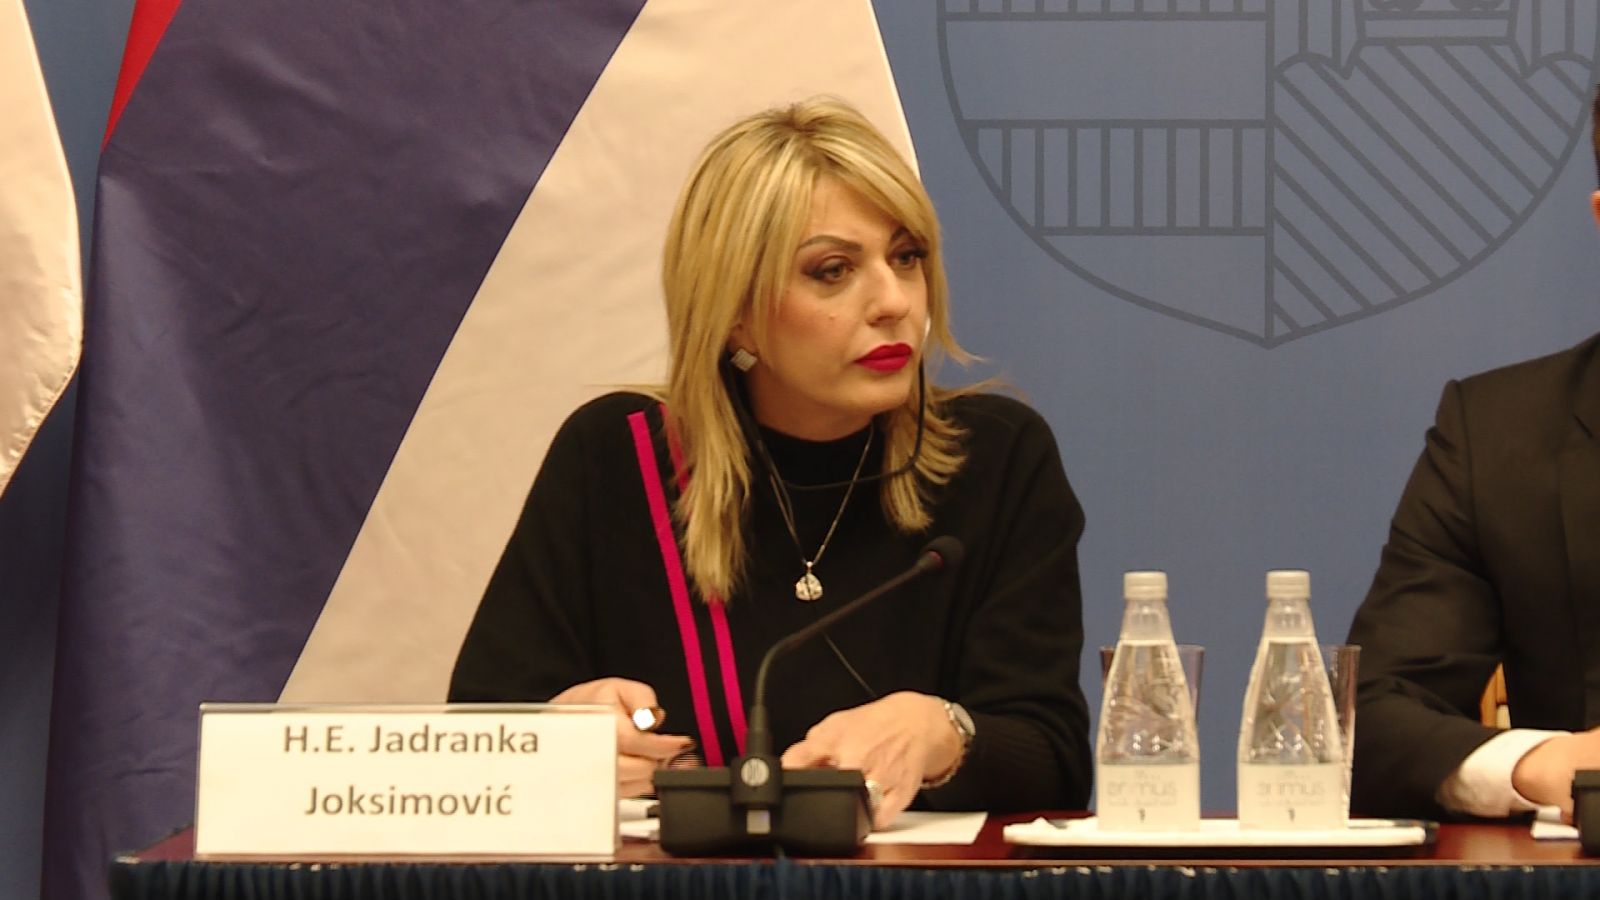 Ј. Јоксимовић: О изборима се размишља, још није одлучено